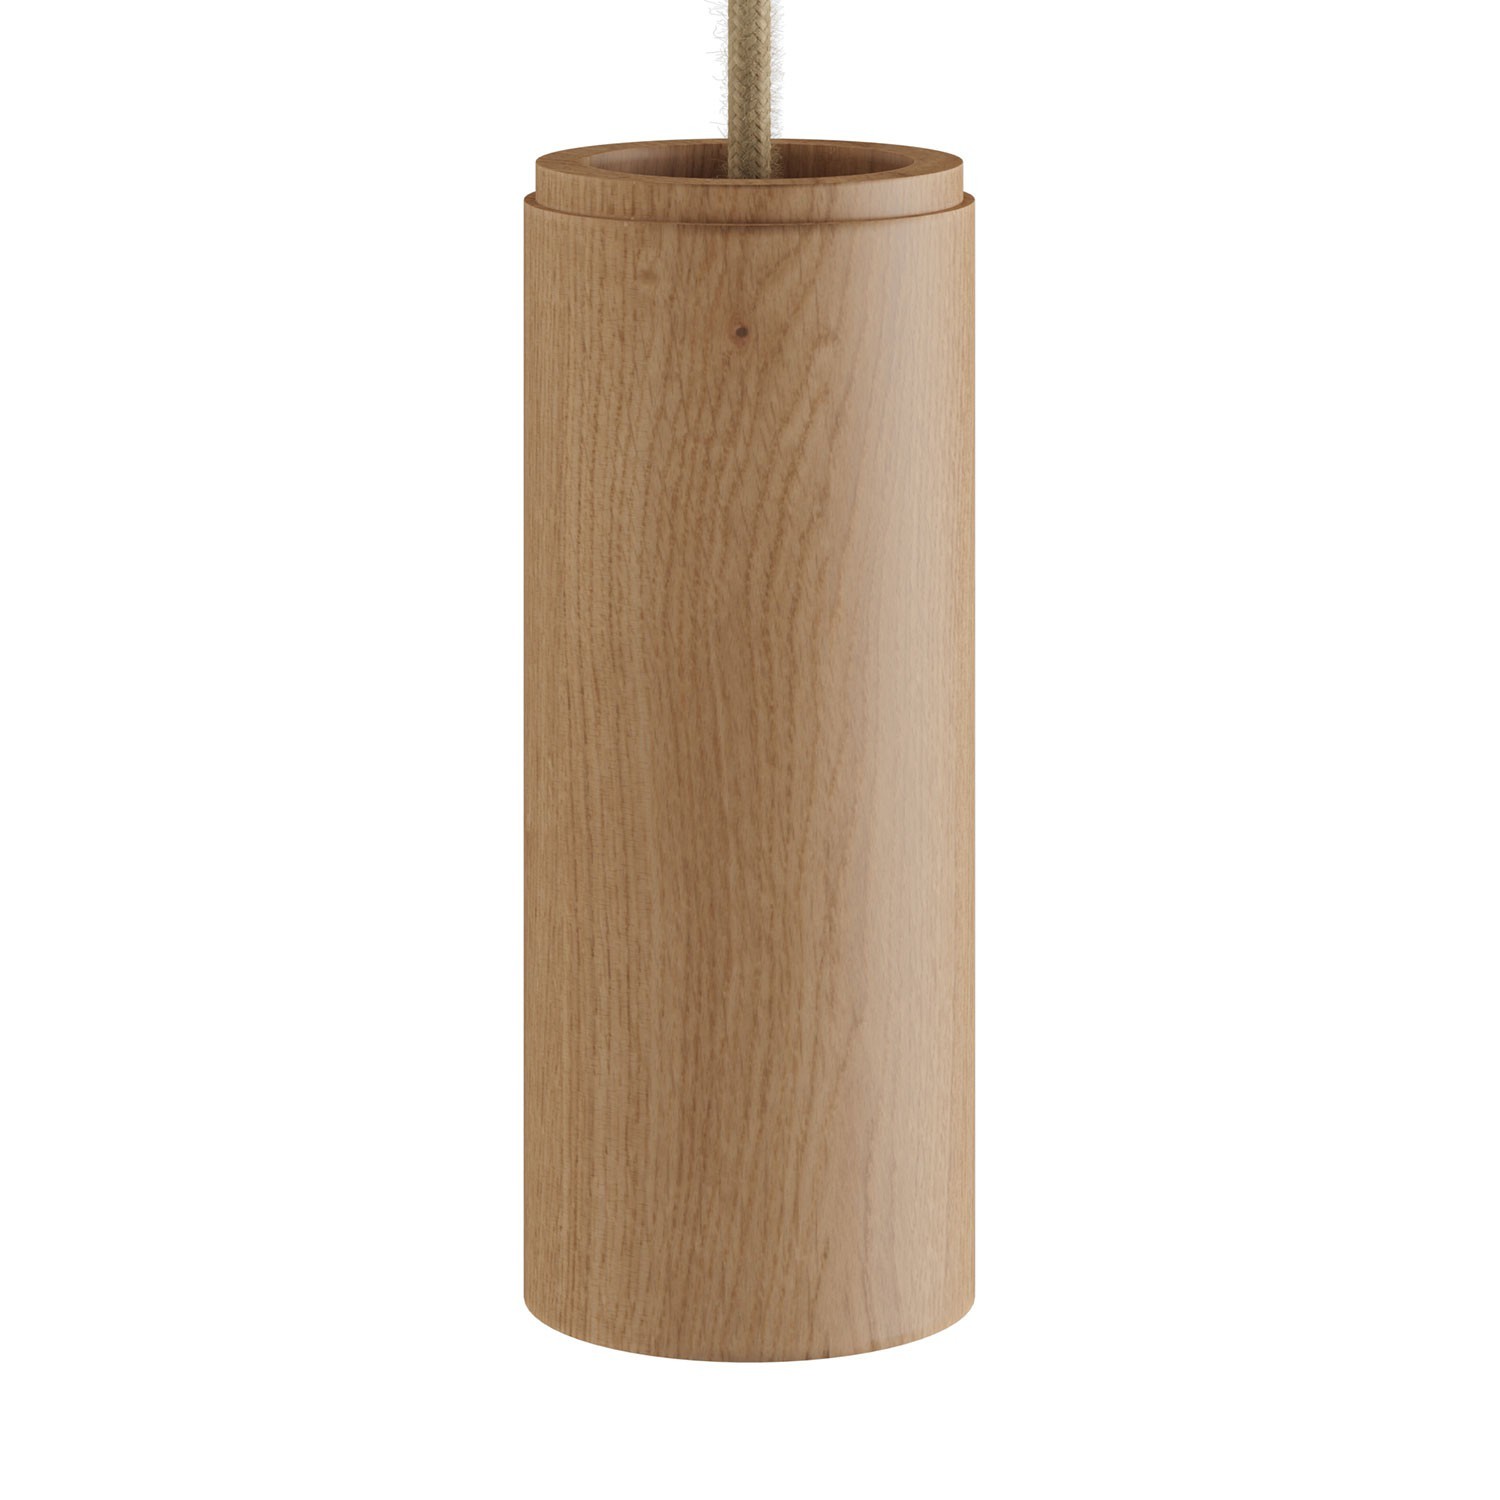 Viseče svetilo s tekstilnim kablom in lesenim senčilom Tub-E14